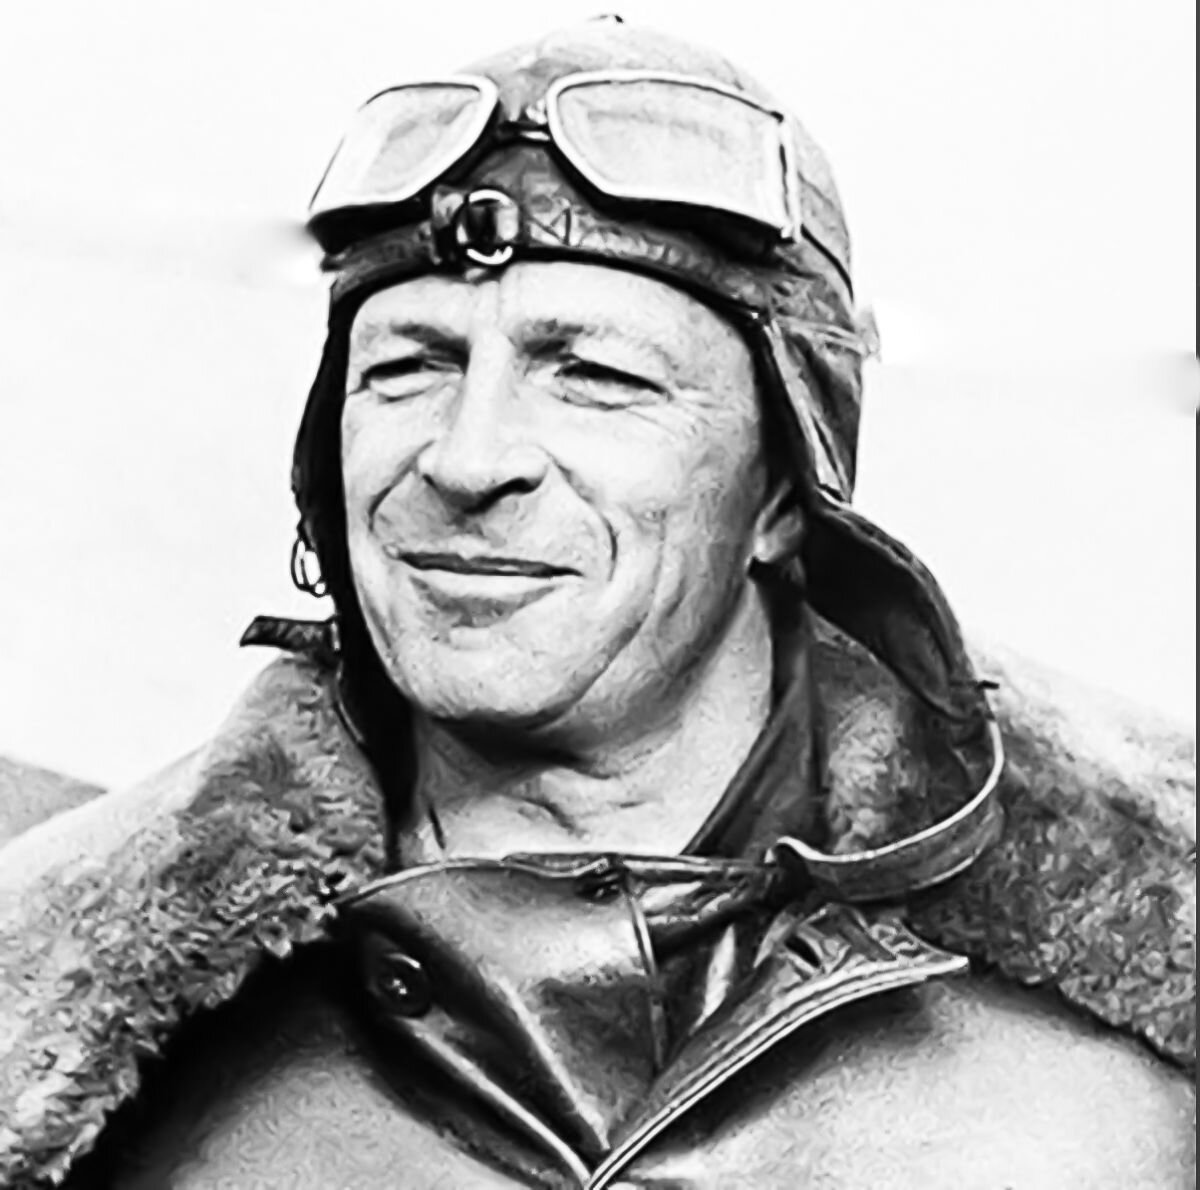 Михаил Михайлович Громов , cоветский лётчик и военачальник, генерал-полковник авиации, спортсмен, профессор, Герой Советского Союза. Заслуженный лётчик СССР.